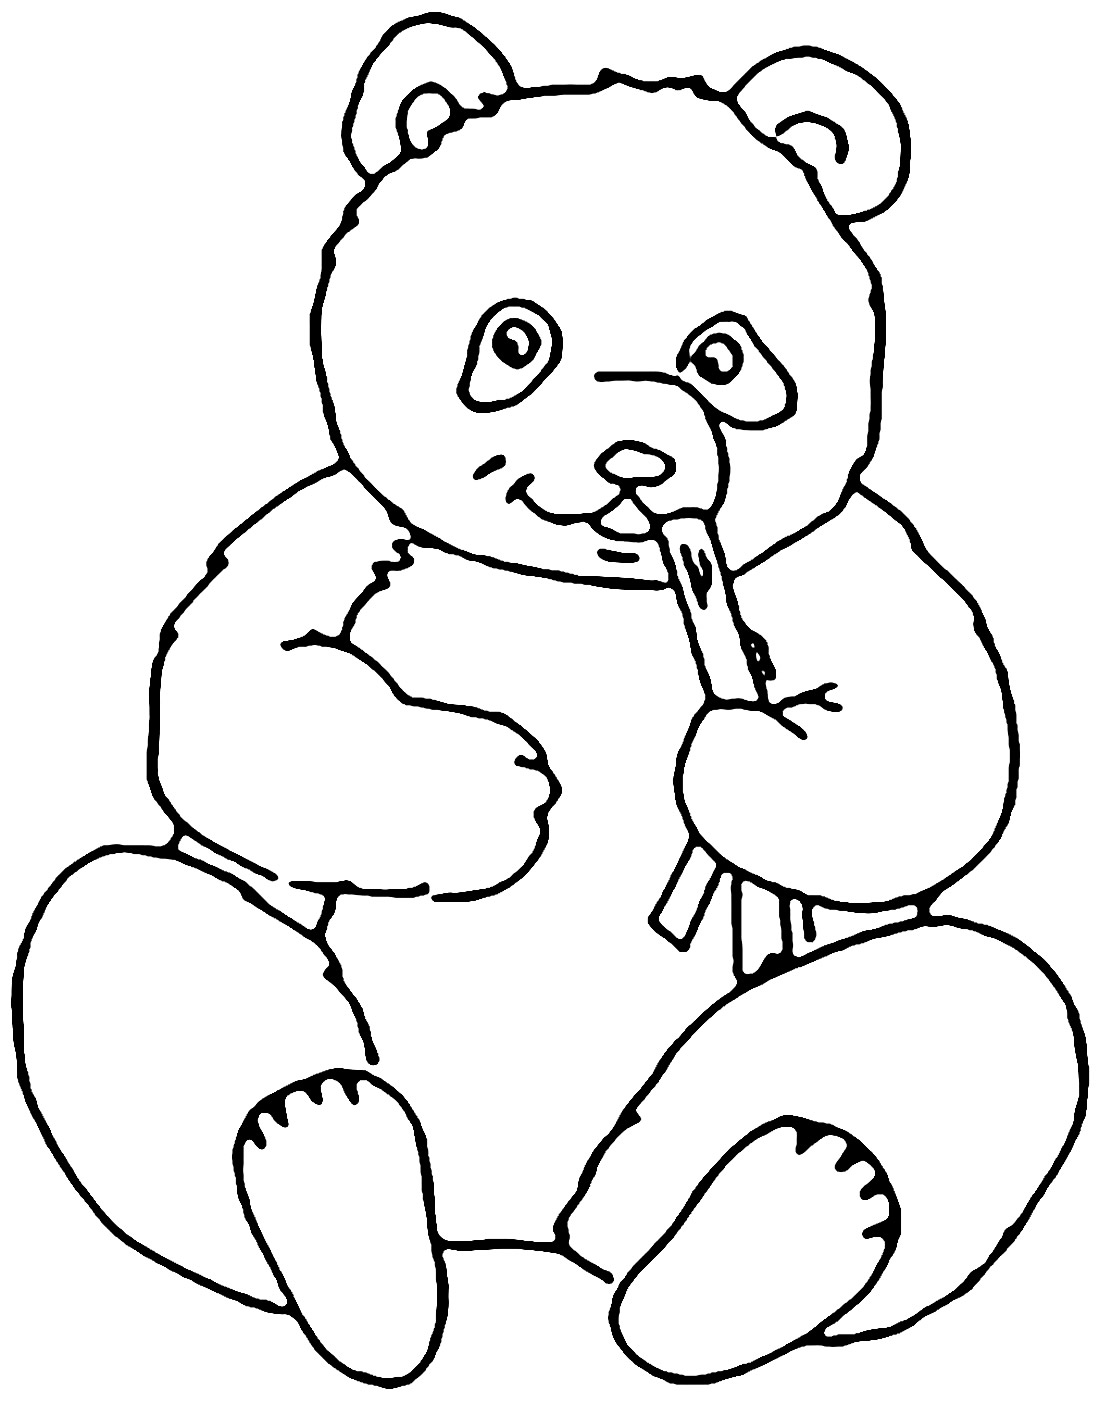 Panda para colorir, #desenhodepandaparapintar #desenhosparapintar